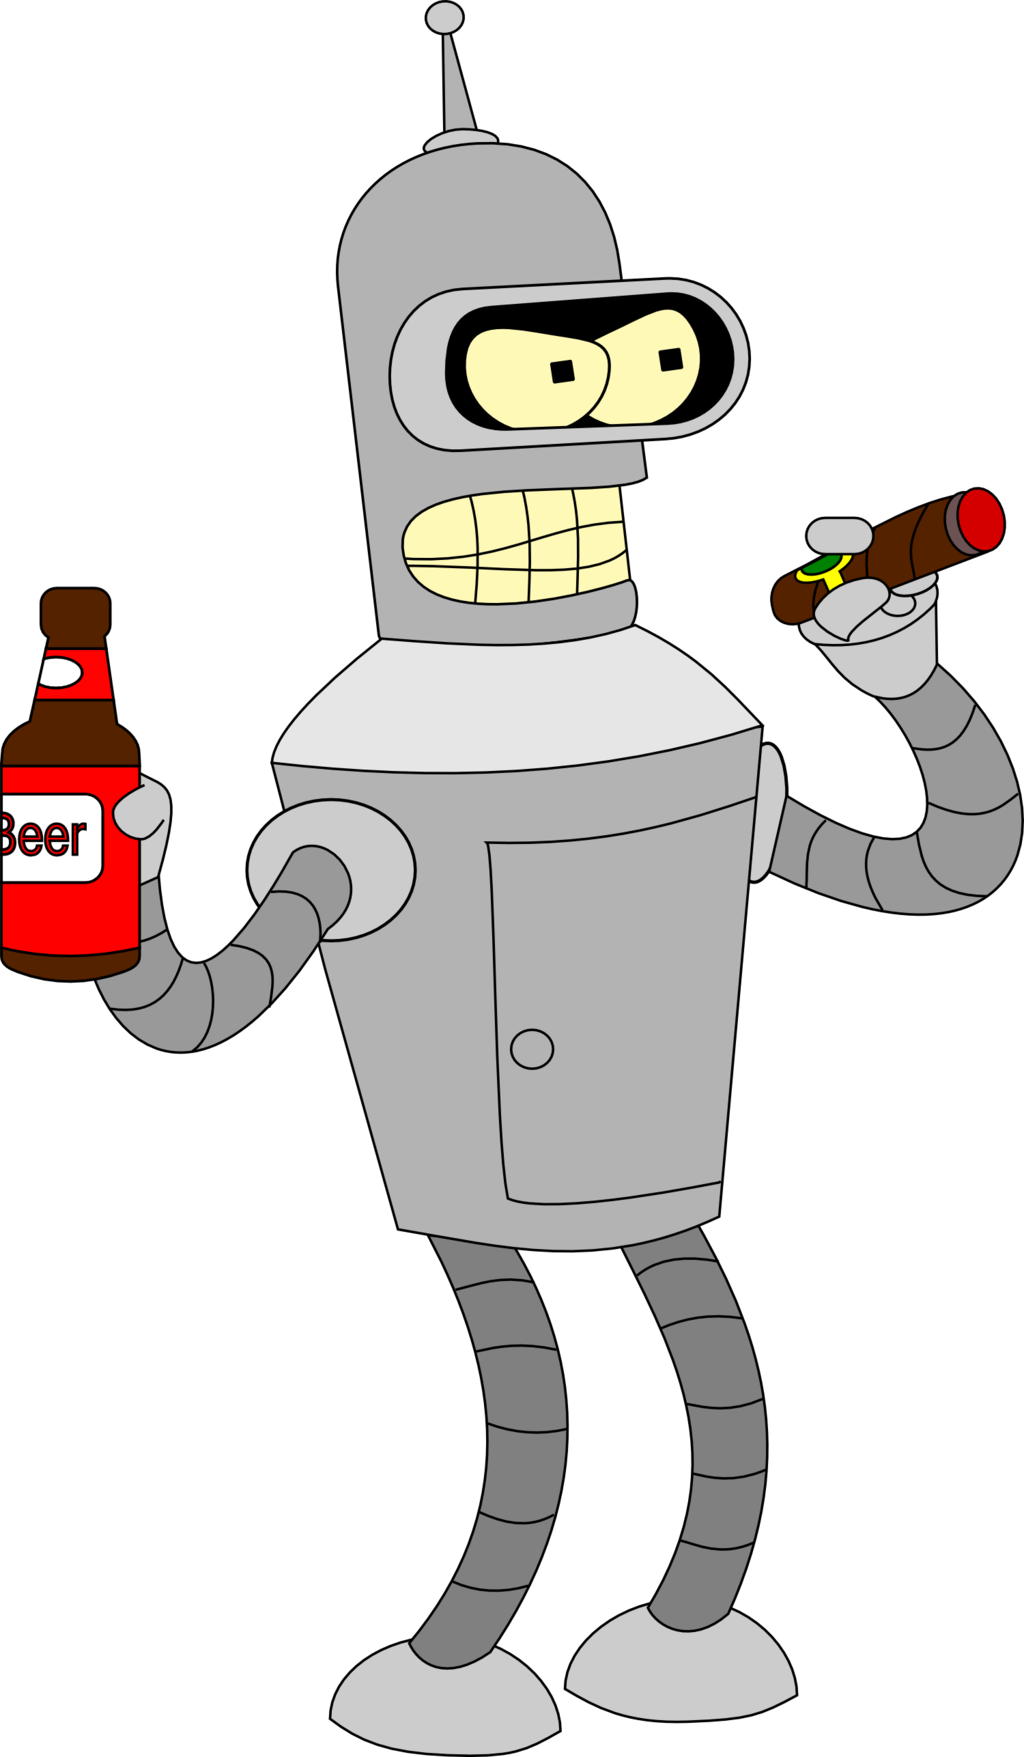 Bender Image PNG Image